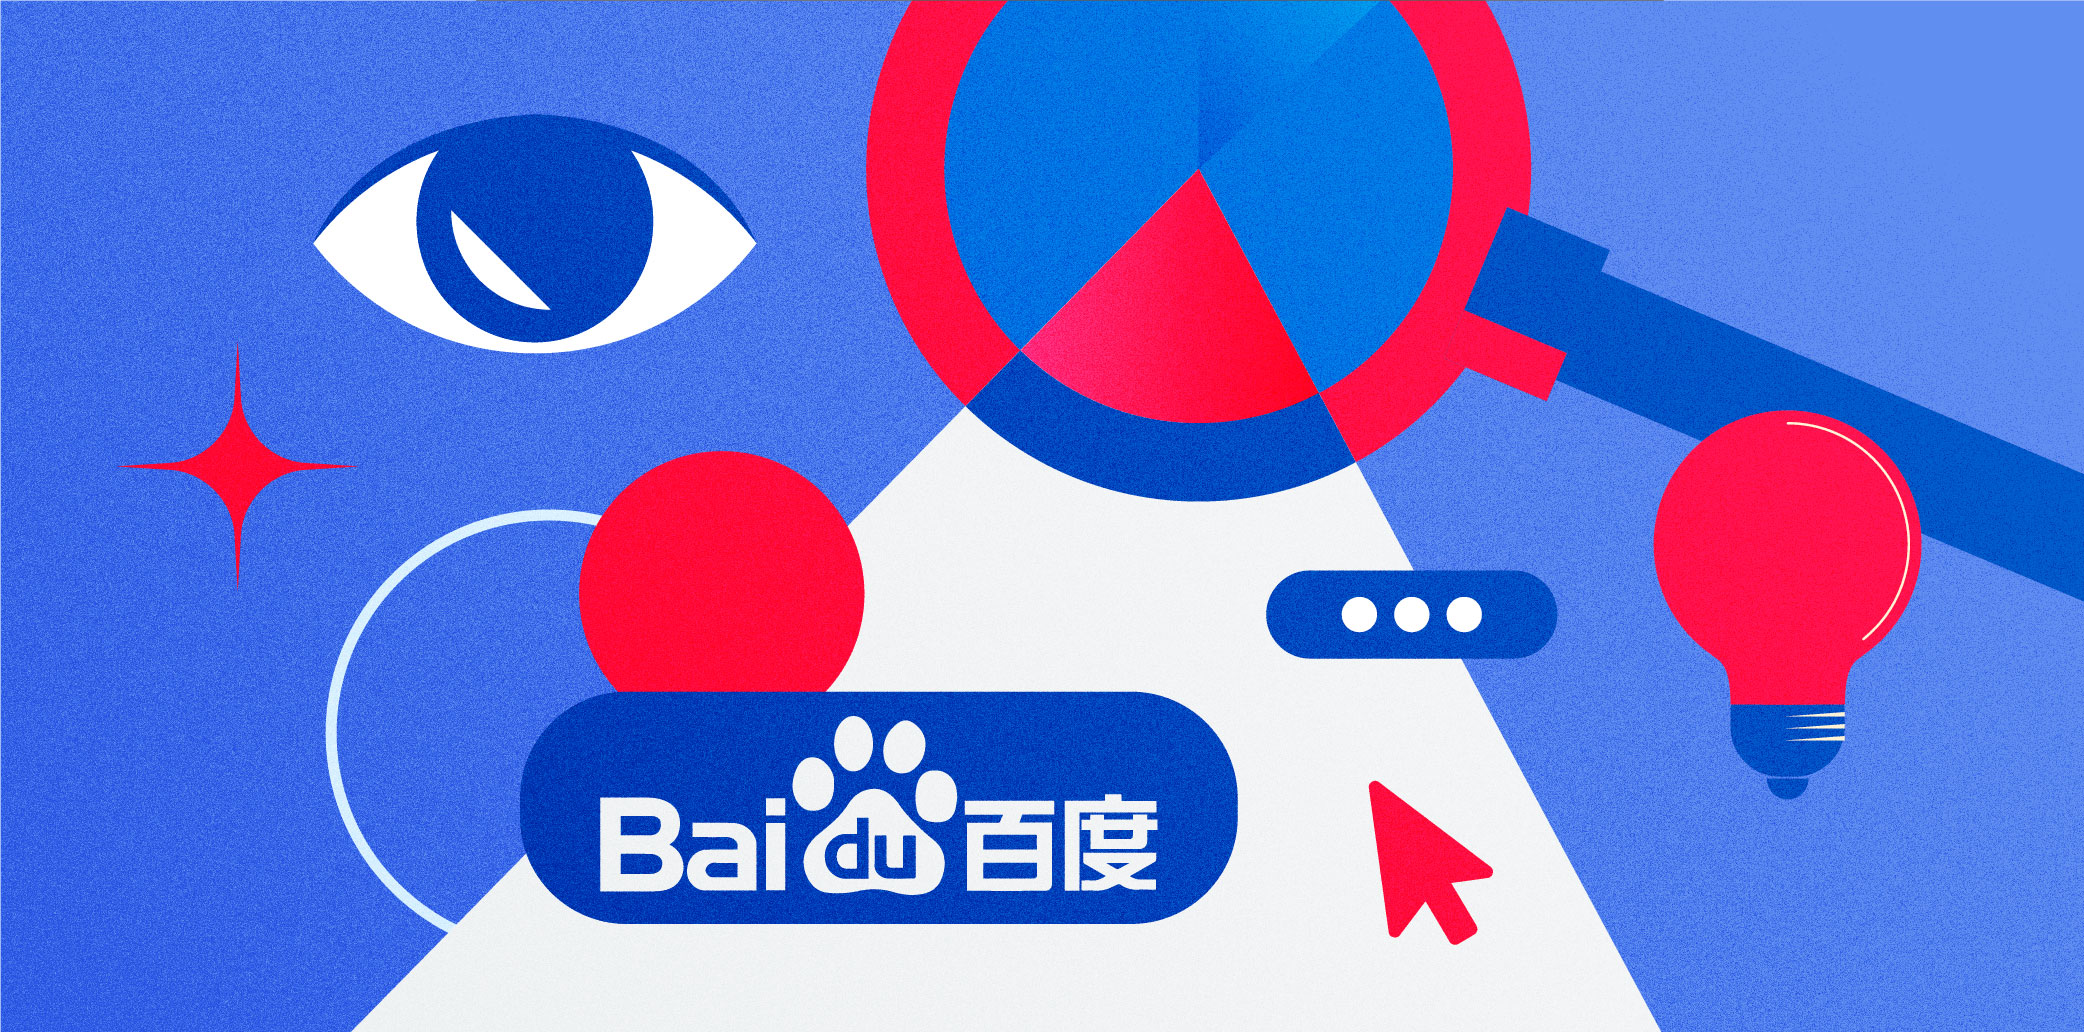 Baidu reports widening losses in Q3 despite revenue beating estimates